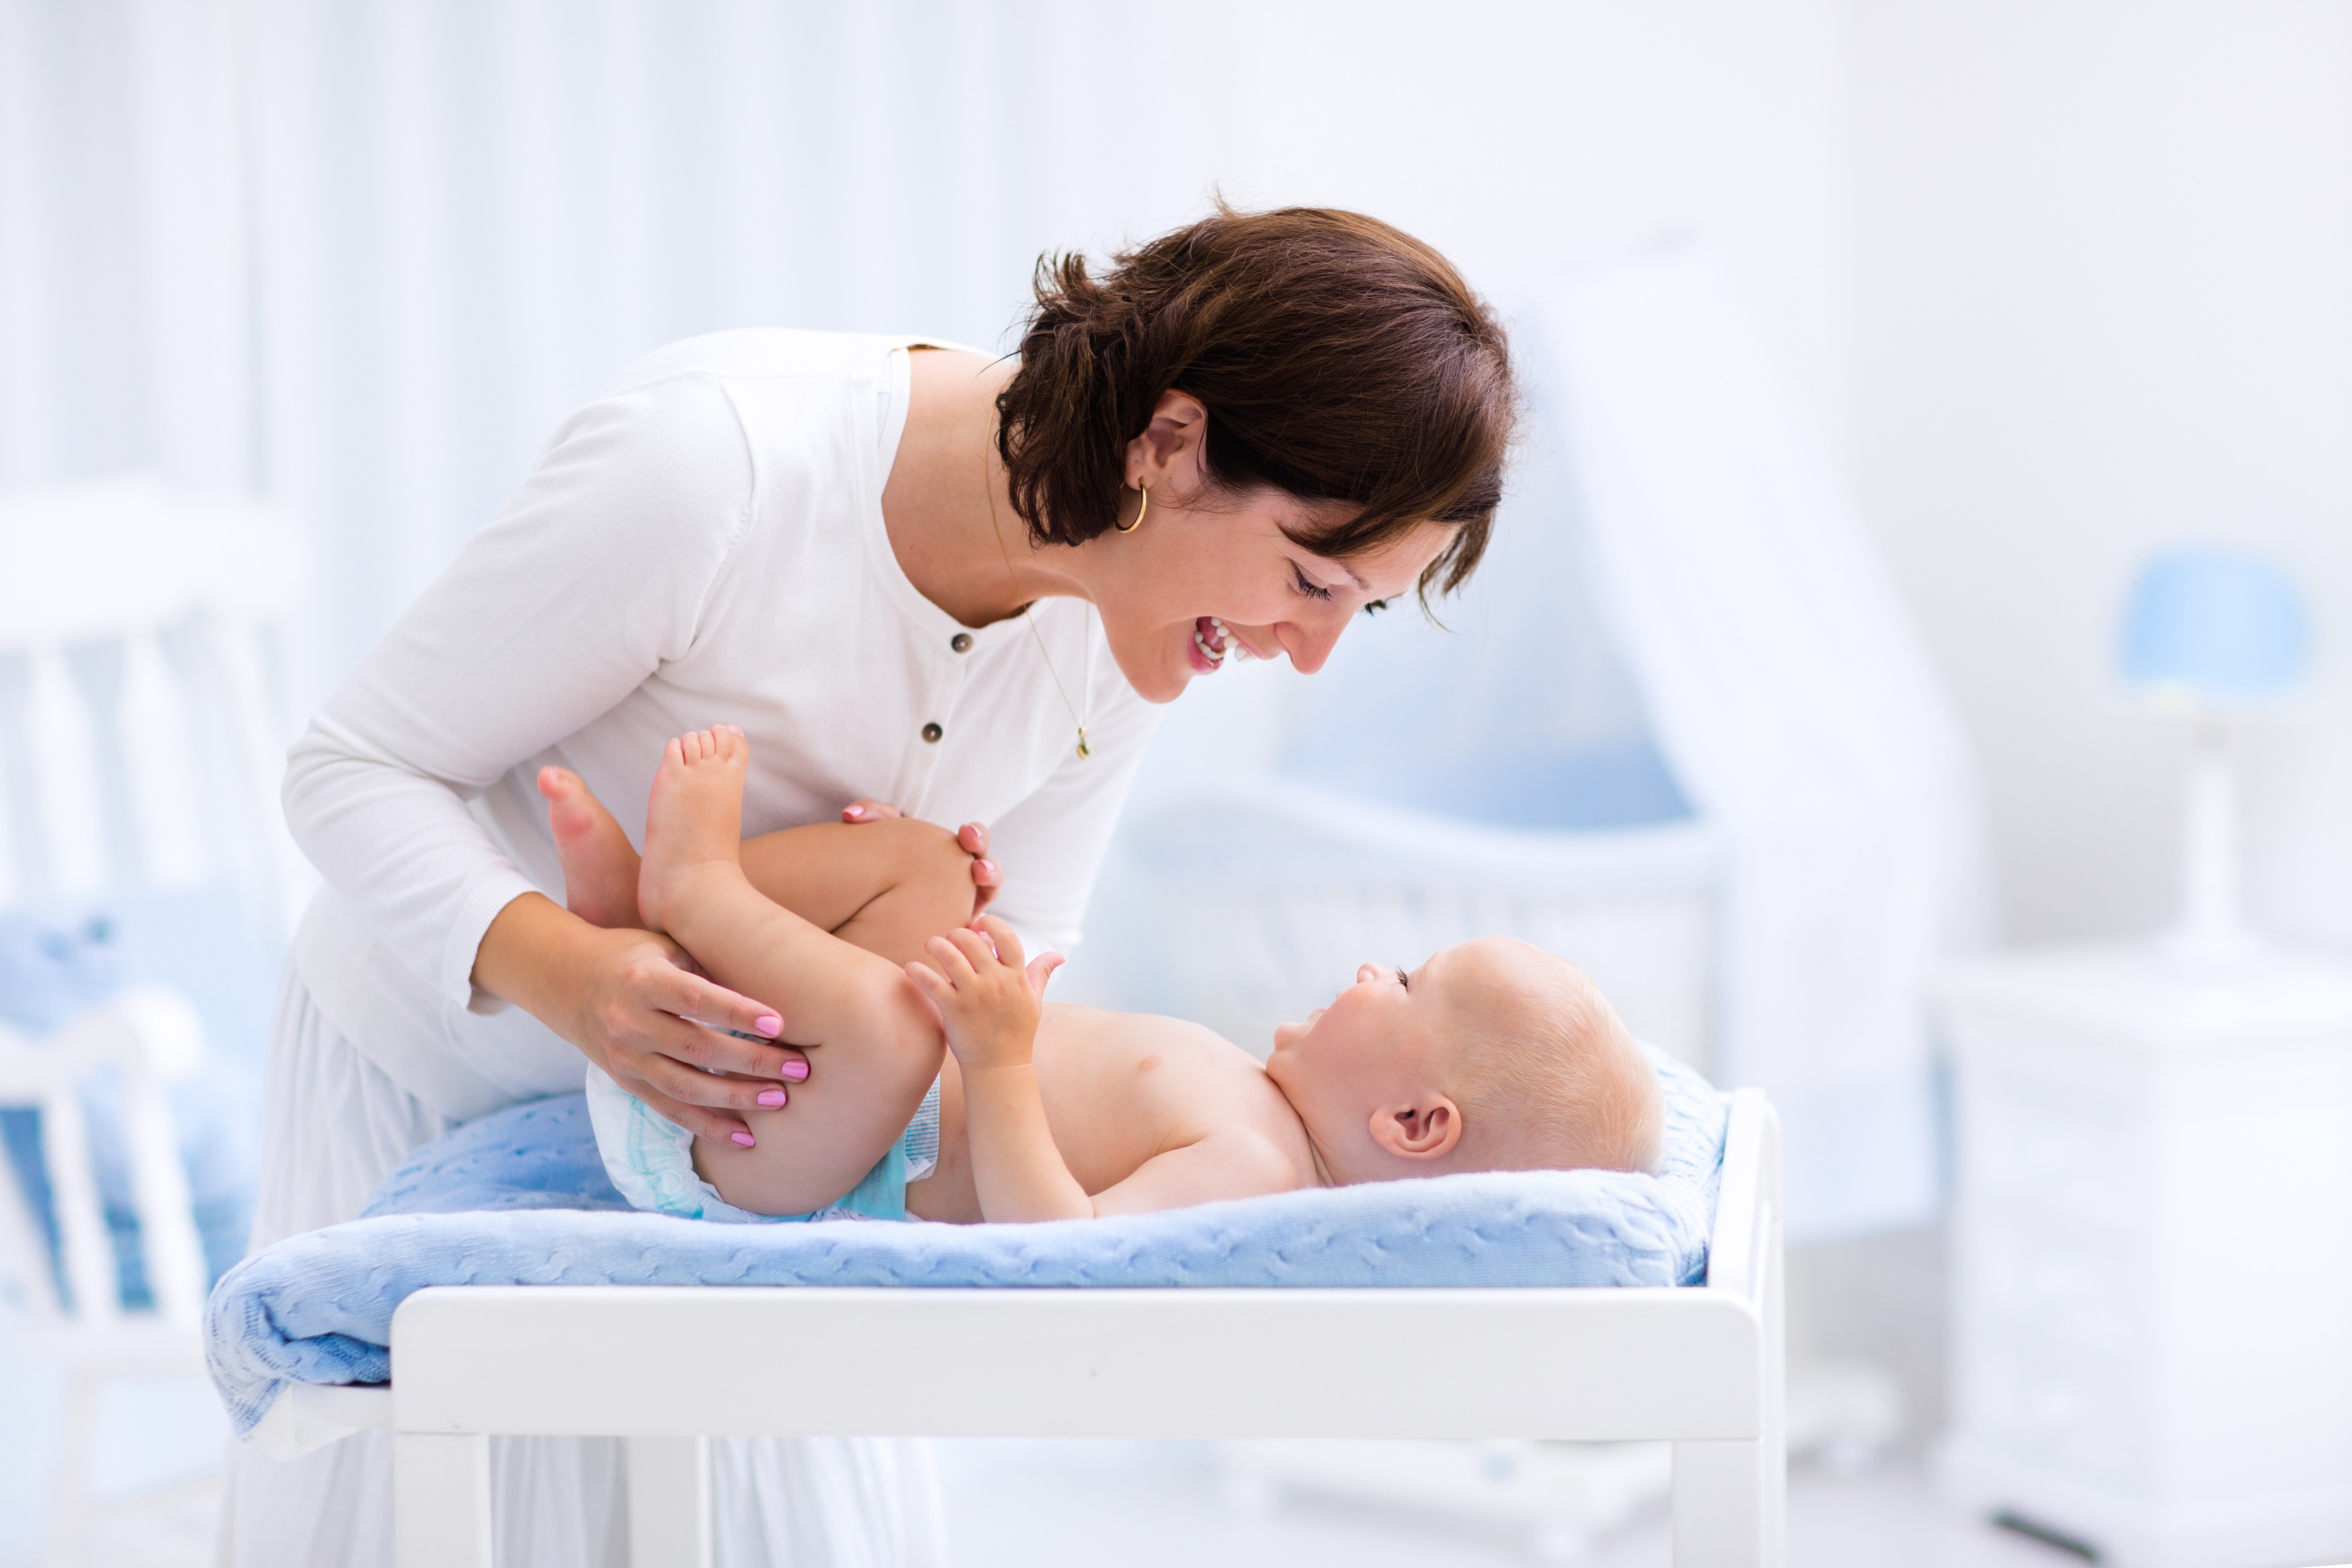 Как менять подгузник новорожденному